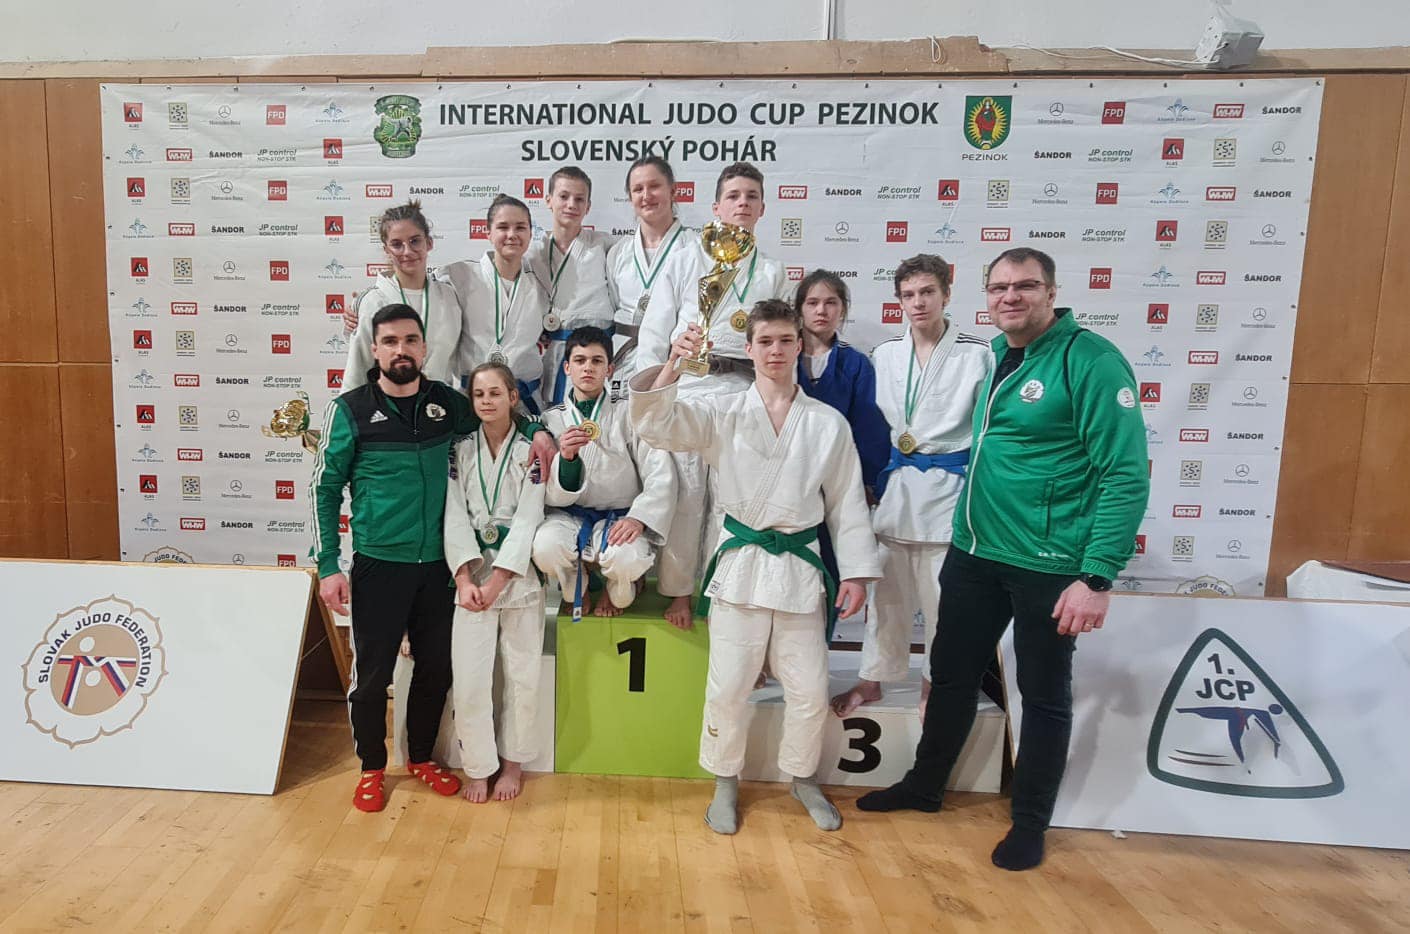 Judocy Czarnych Bytom podczas Grand Prix Pezinok - Pucharu Słowacji wywalczyli 8 medali